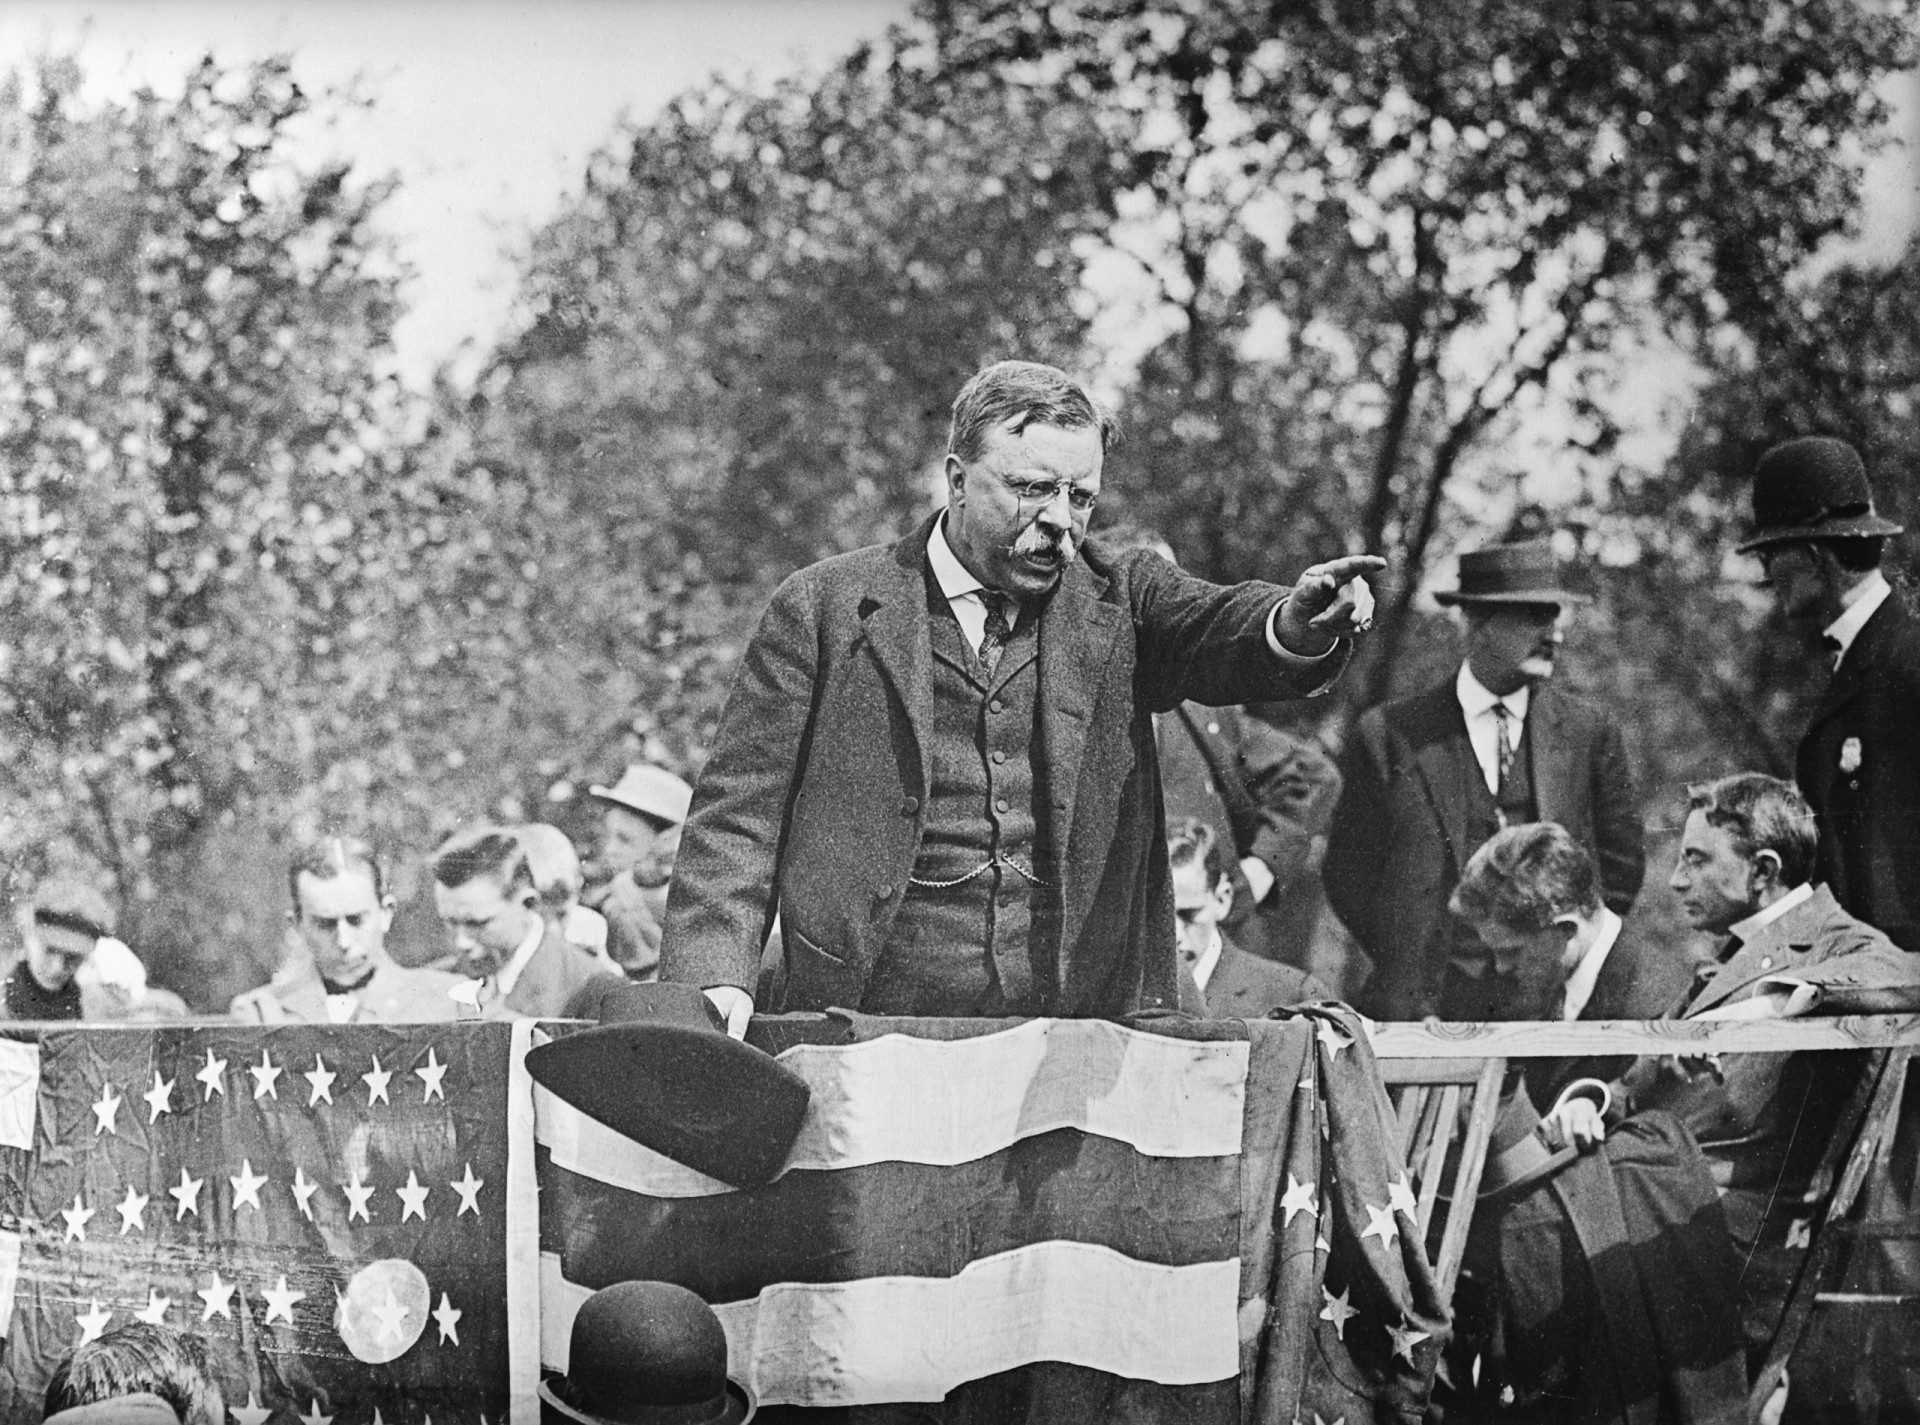 <p>Theodore Roosevelt kandidiert im Jahr 1900 für die Präsidentschaft. Er hält das Amt von 1901 bis 1909.</p><p>Sie können auch mögen:<a href="https://de.starsinsider.com/n/301059?utm_source=msn.com&utm_medium=display&utm_campaign=referral_description&utm_content=689702"> Nachhaltige Mode: An diesen Stars sollten wir uns ein Beispiel nehmen</a></p>